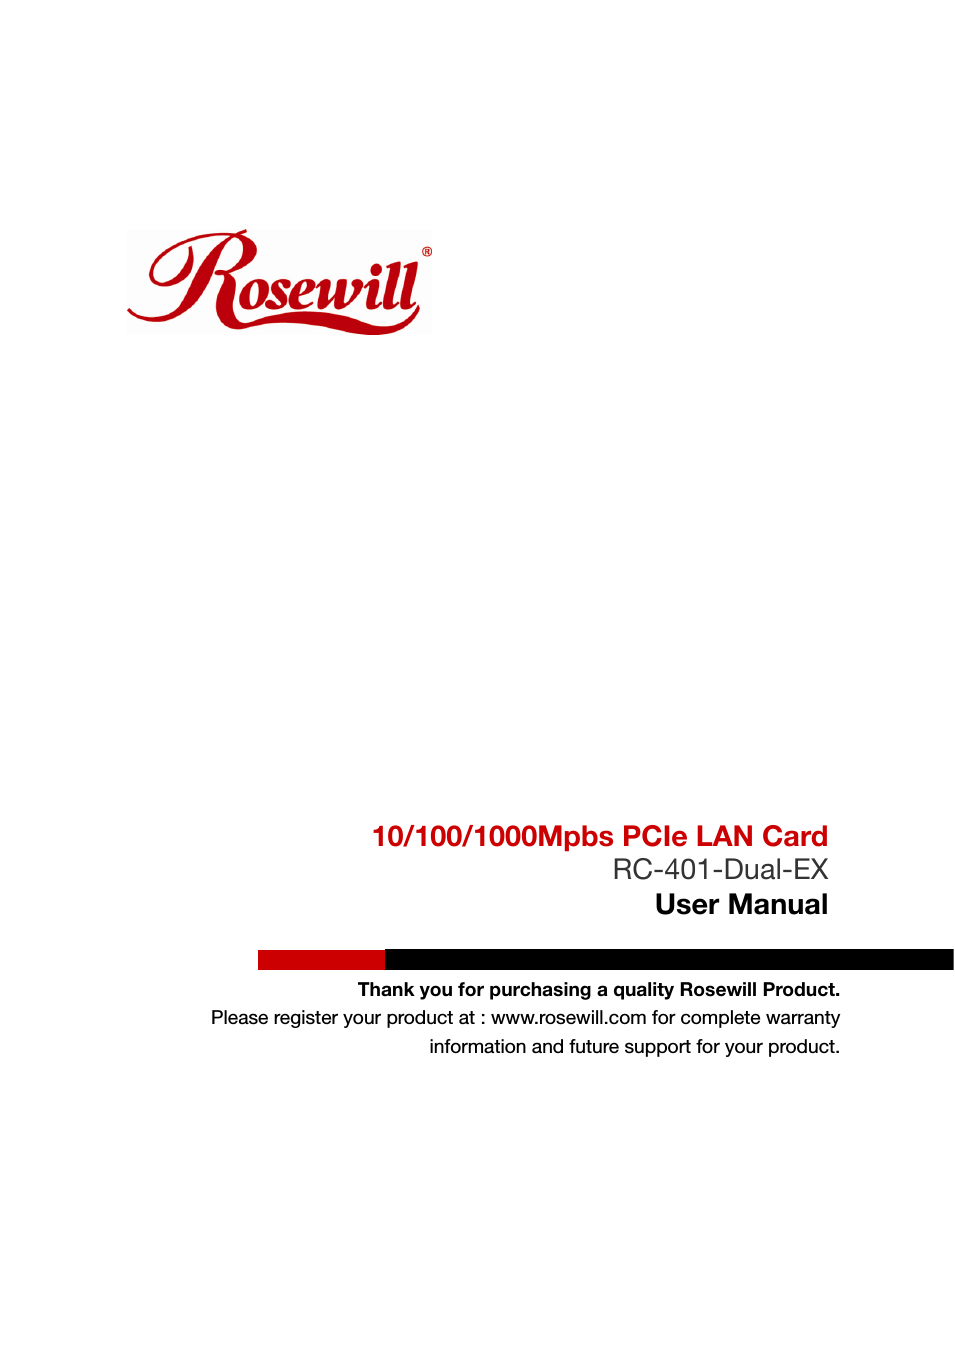 PCIe LAN Card RC-401-Dual-EX